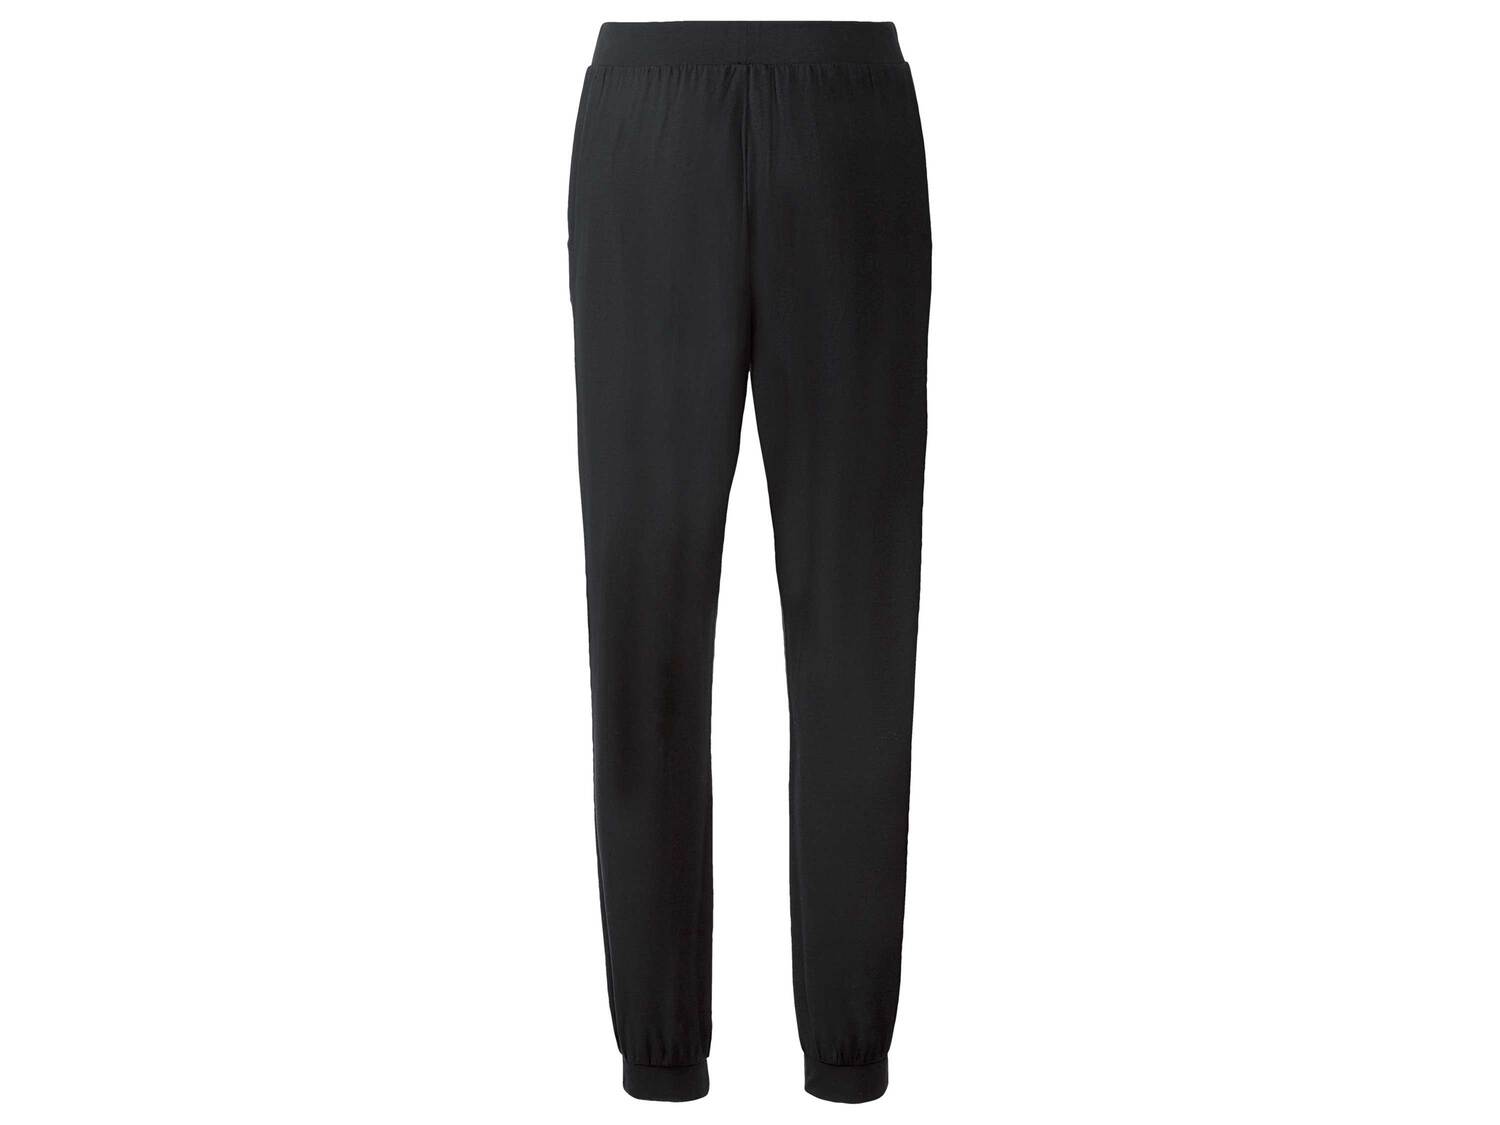 Pantalon dété , le prix 5.99 € 
- Du S au XL selon modèle
- Ex. 65 % polyester ...